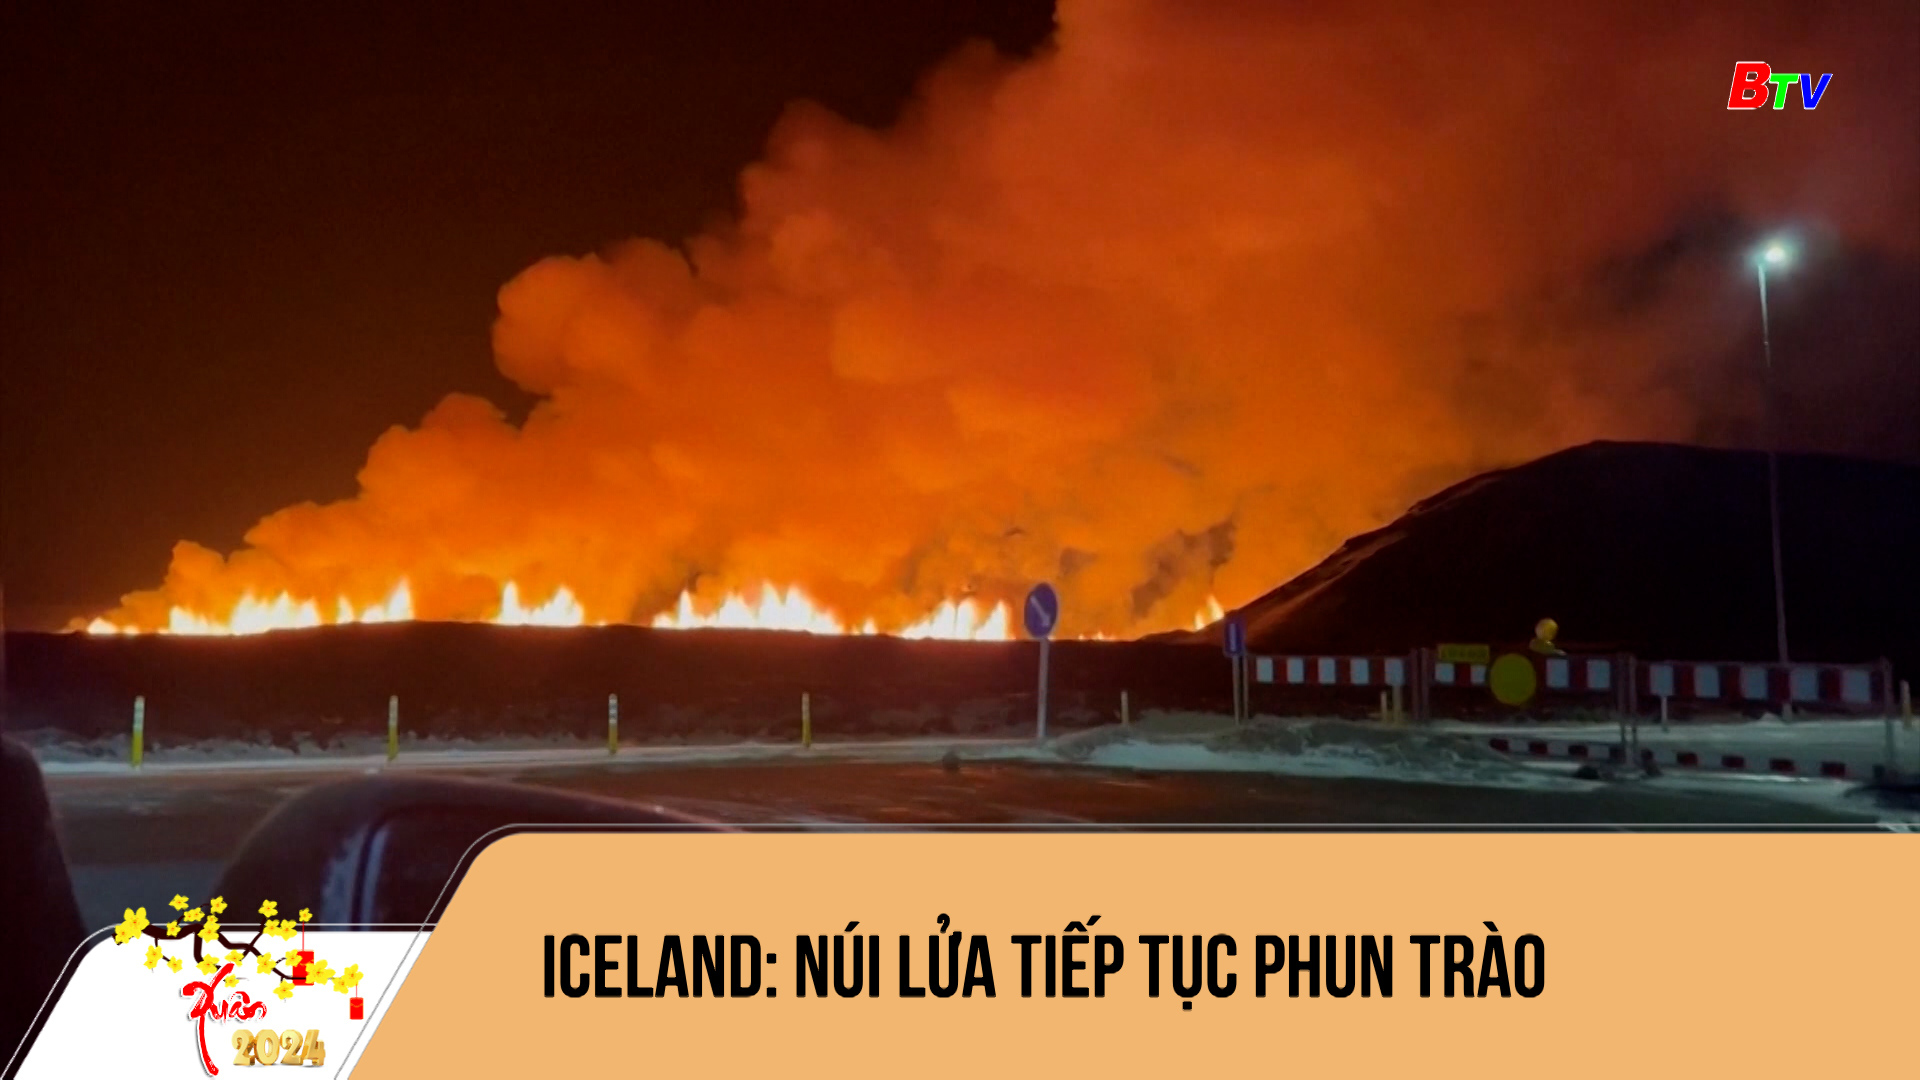 Iceland: núi lửa tiếp tục phun trào